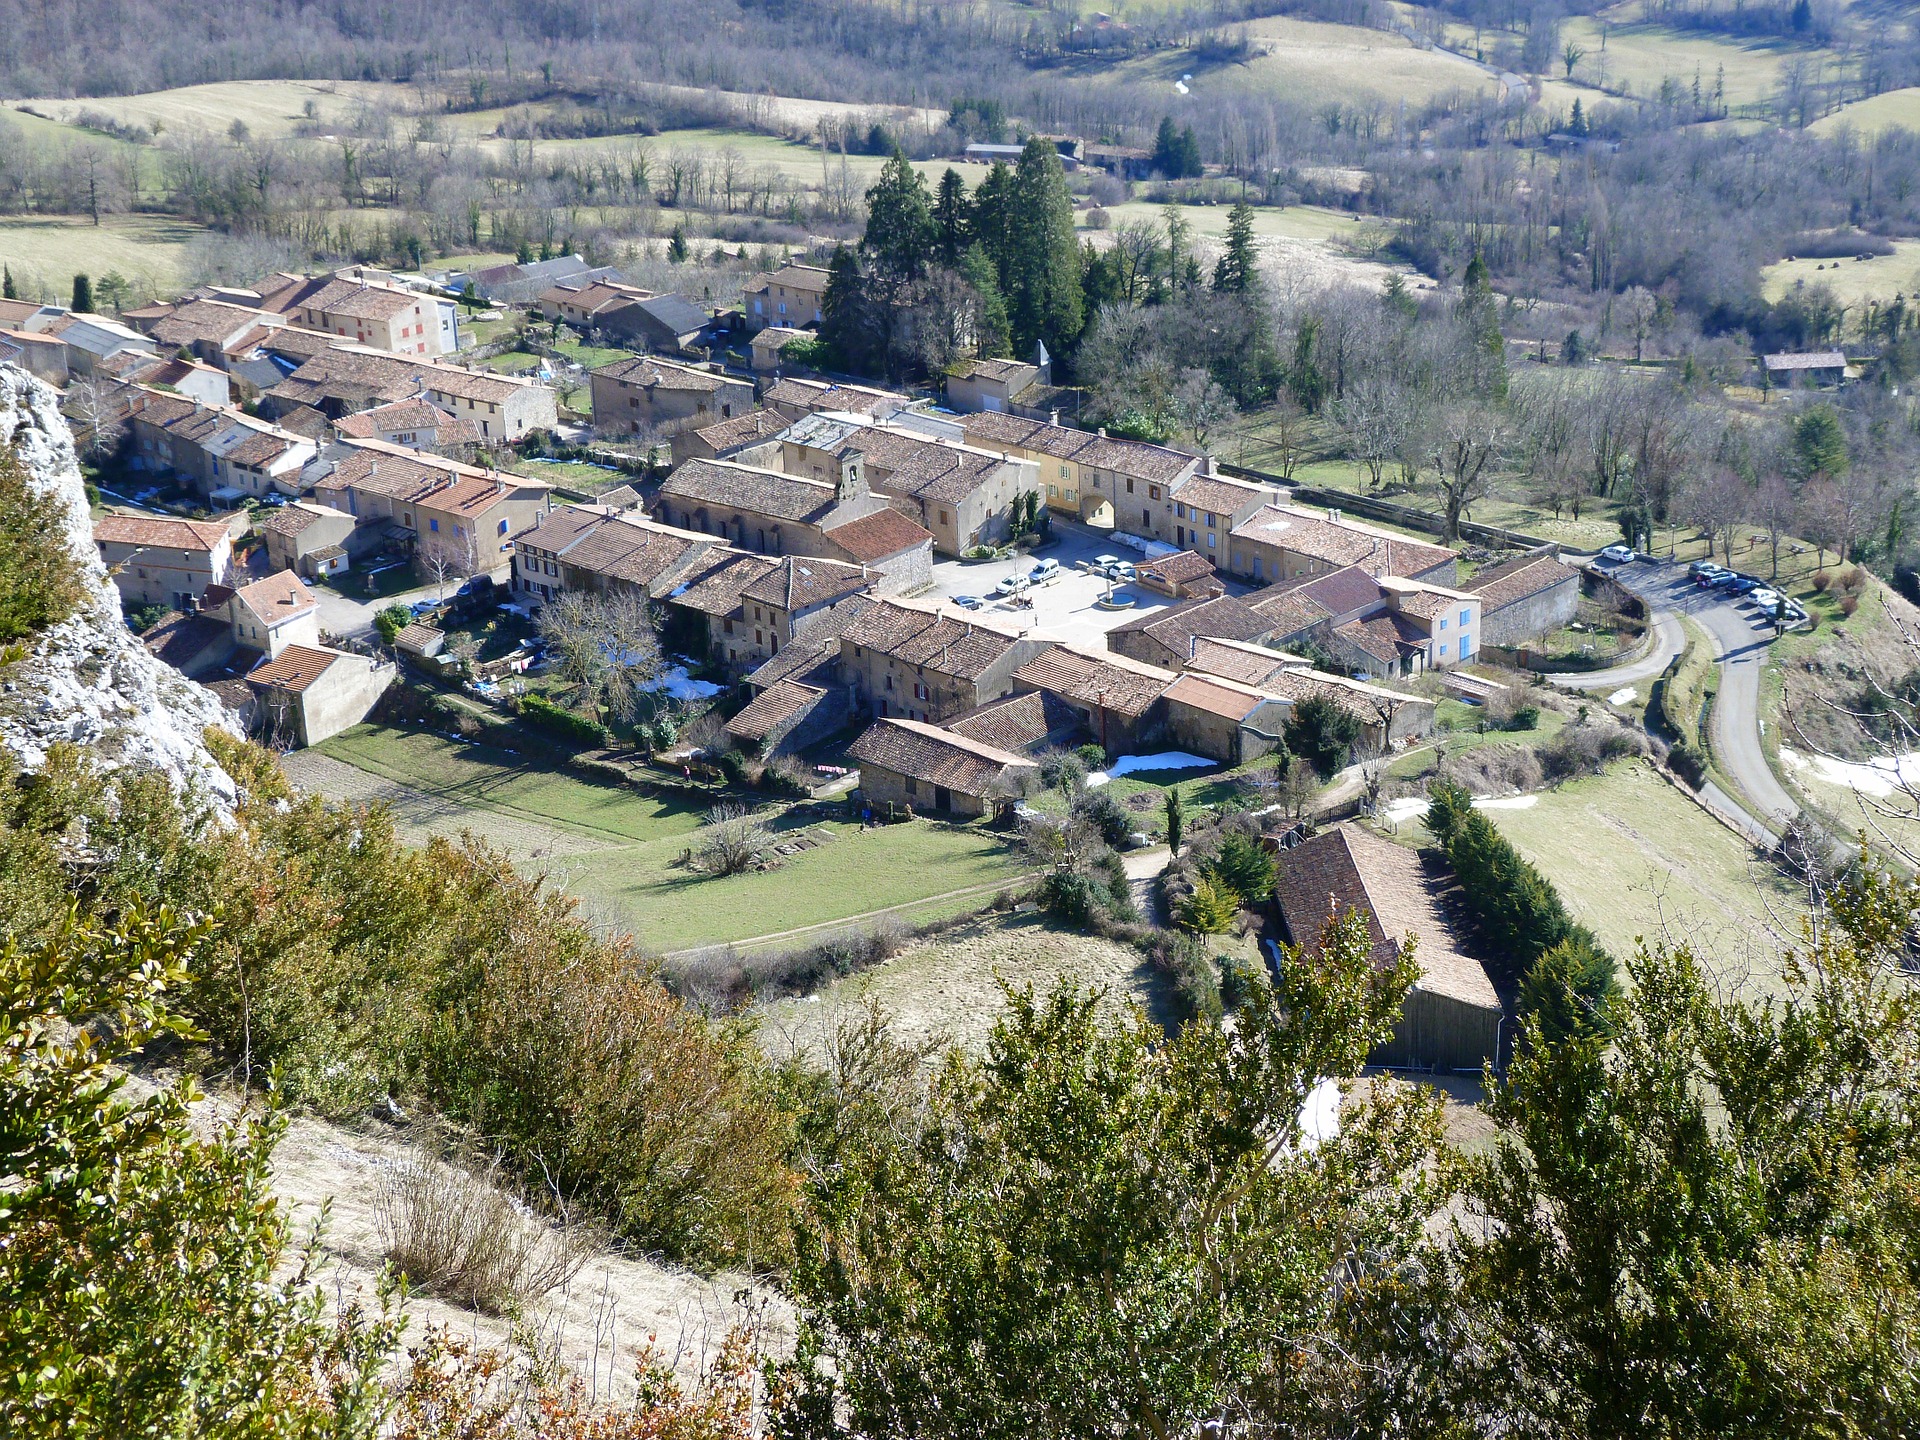 Résidence de tourisme à Foix